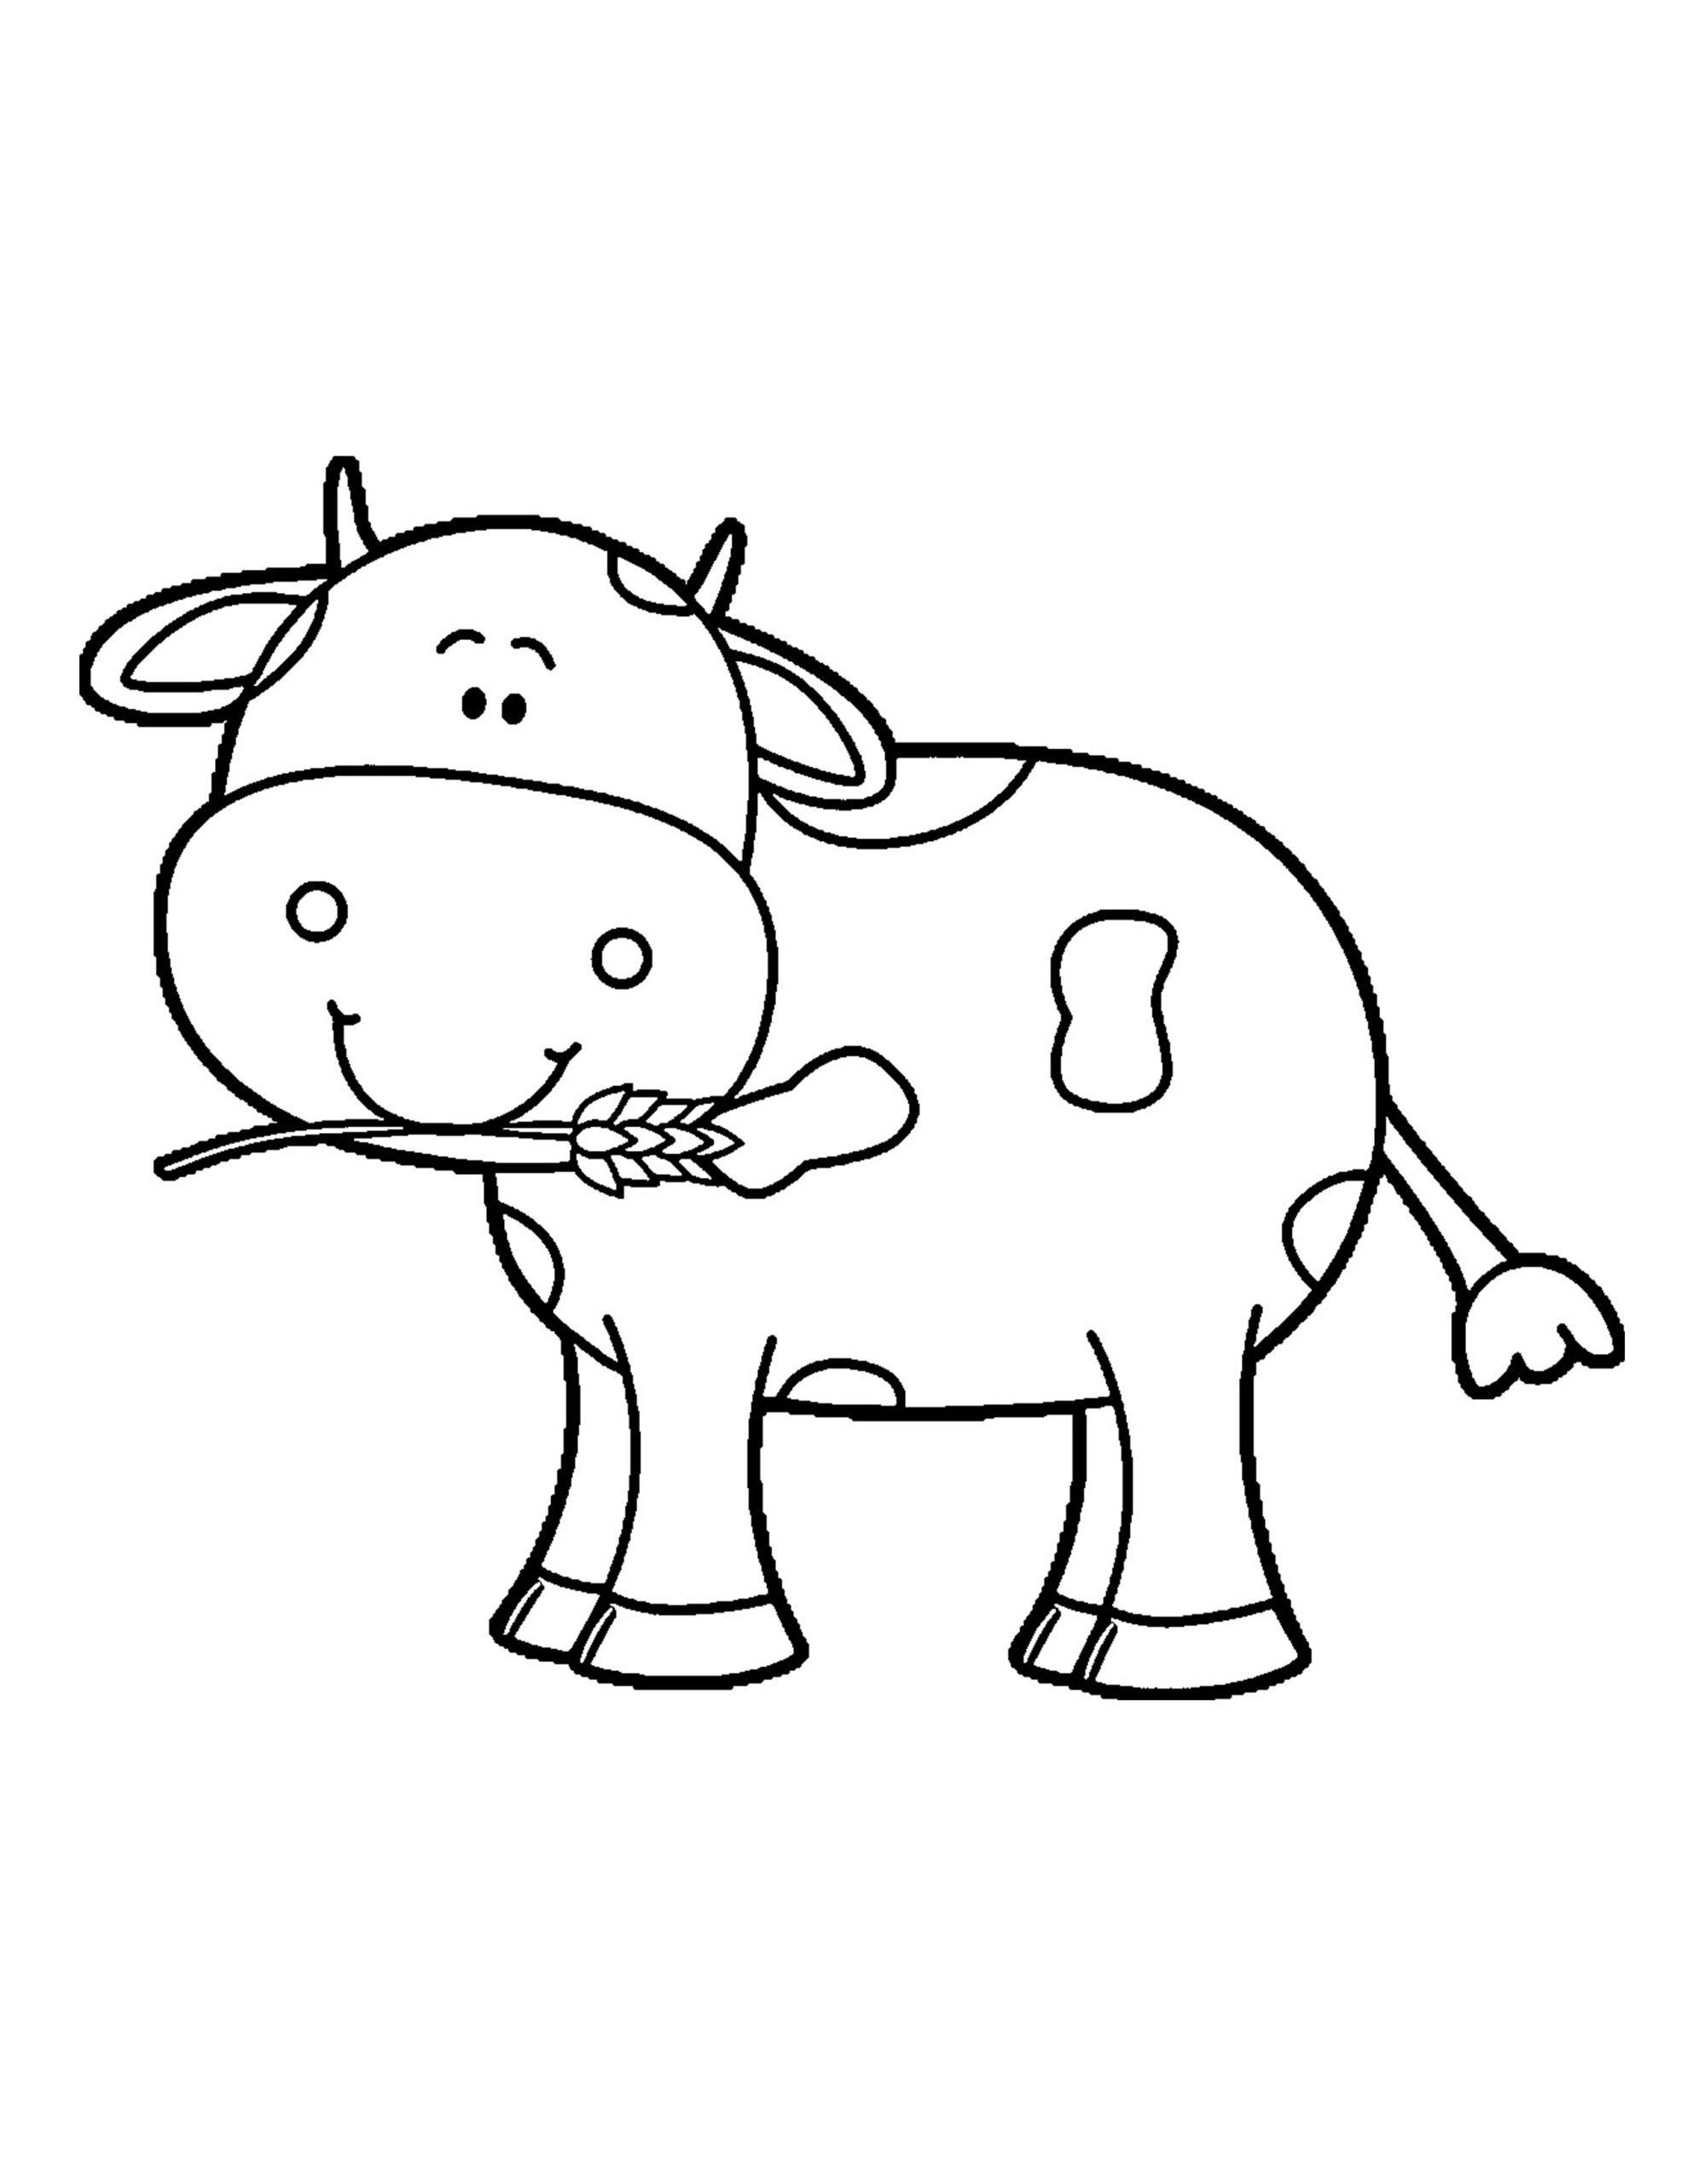 Hướng dẫn chi tiết cách vẽ con bò đơn giản với 9 bước cơ bản